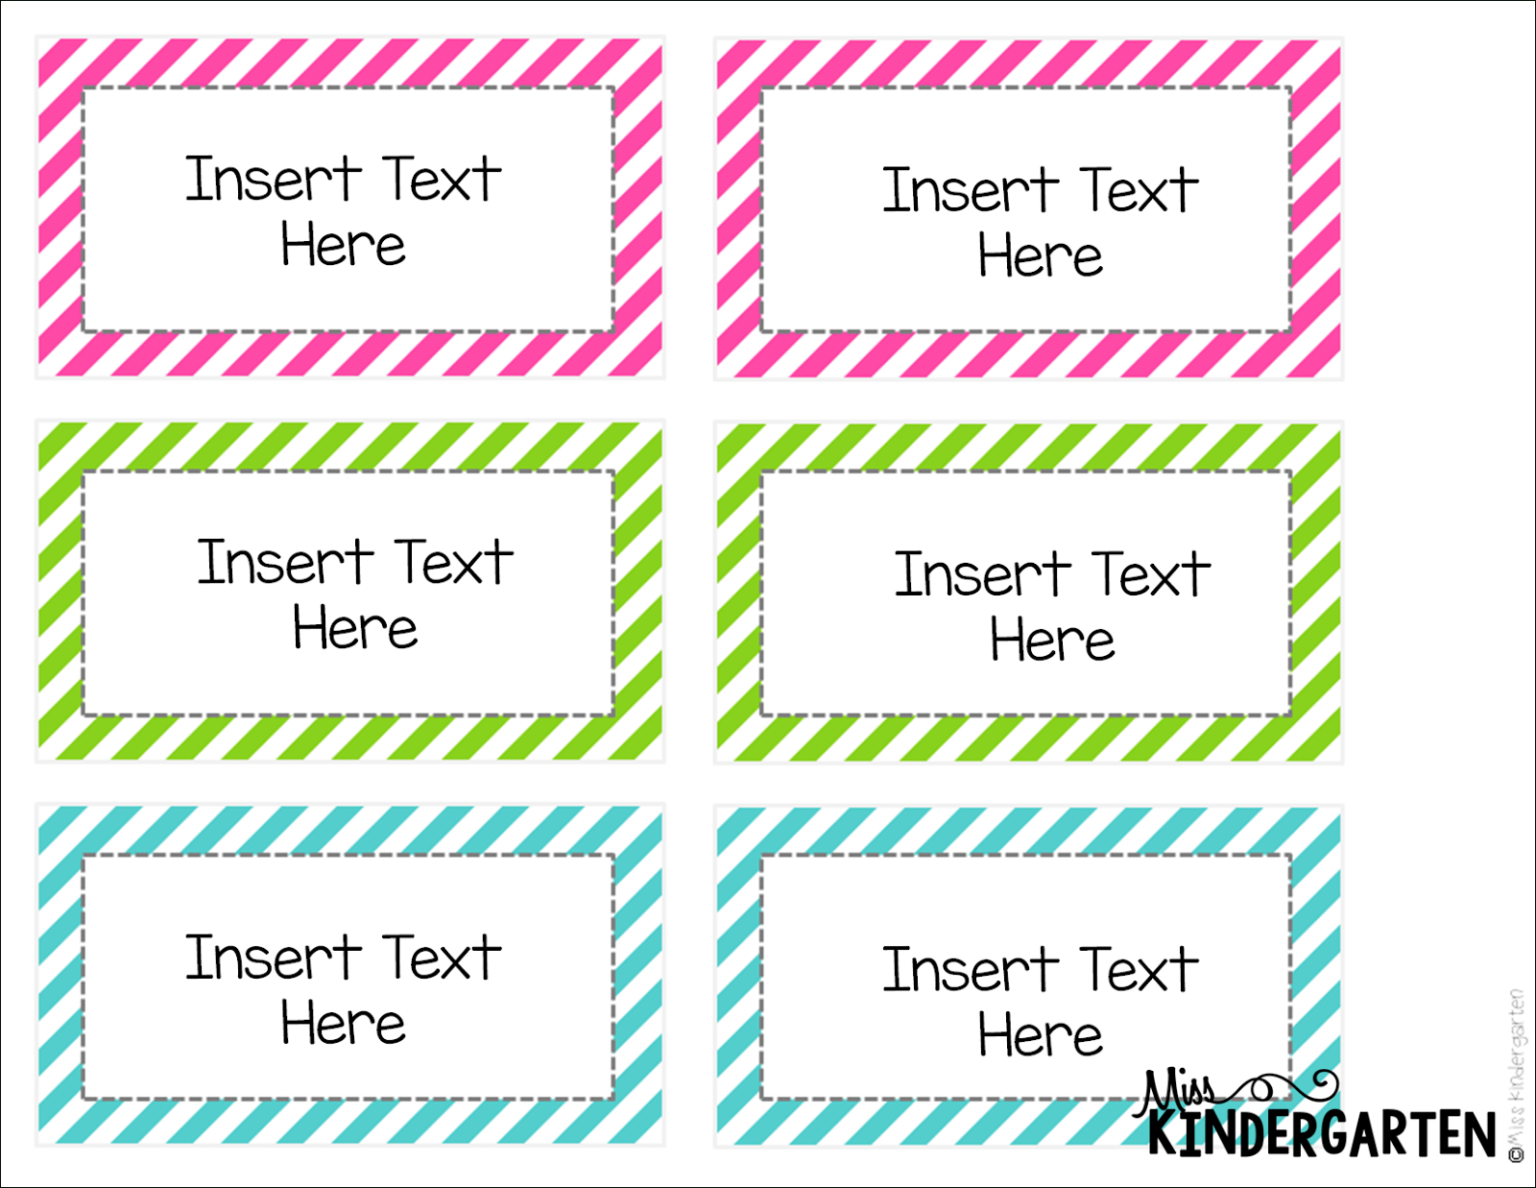 editable-word-wall-templates-miss-kindergarten-in-blank-word-wall